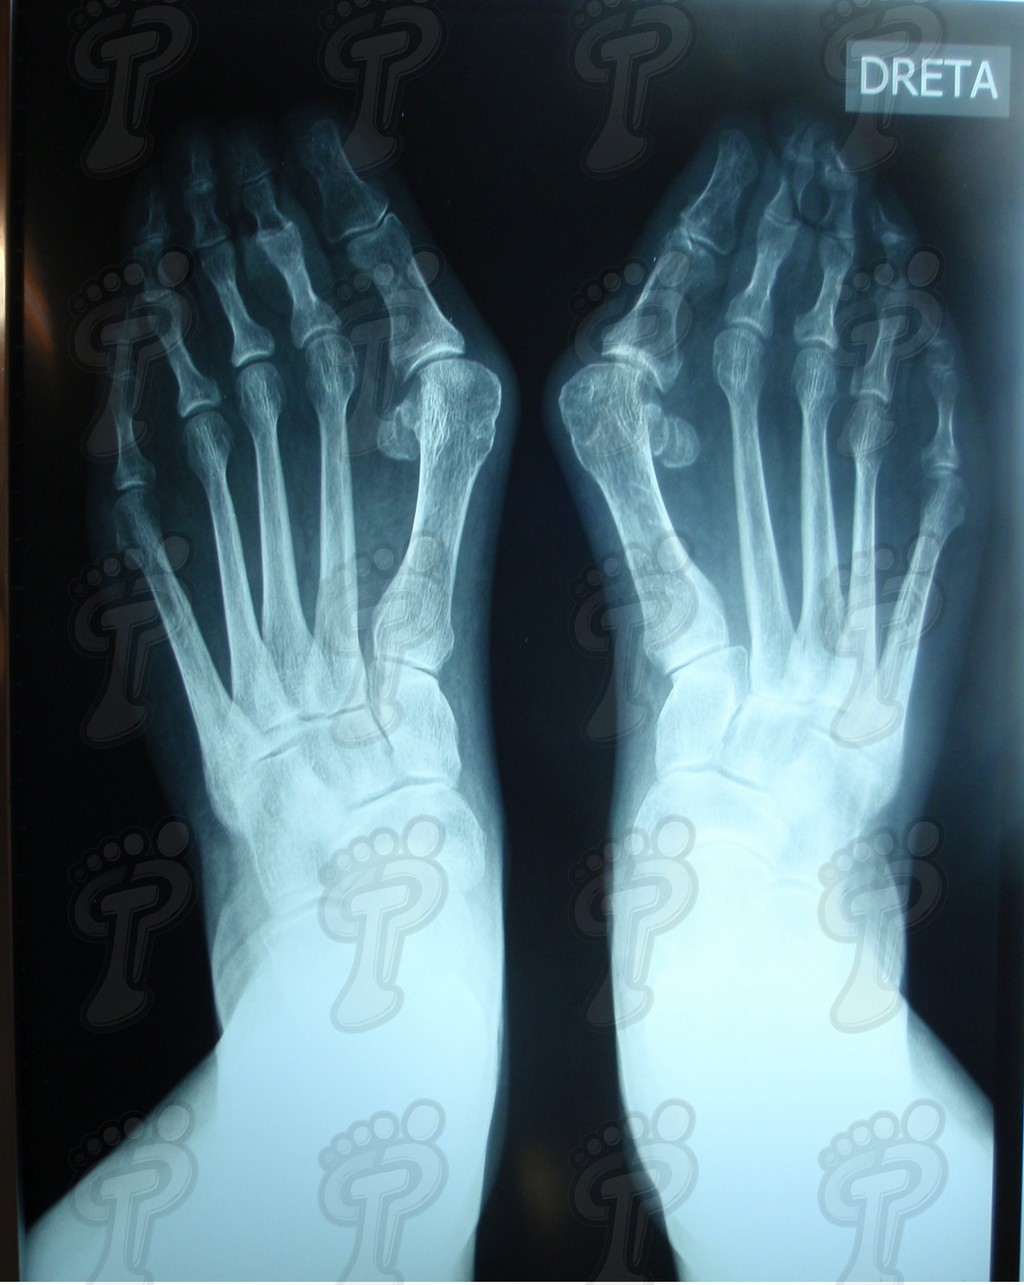 Вальгусная деформация первого пальца стопы (Hallux valgus): самые частые структурные изменения плюсневого сустава большого пальца.